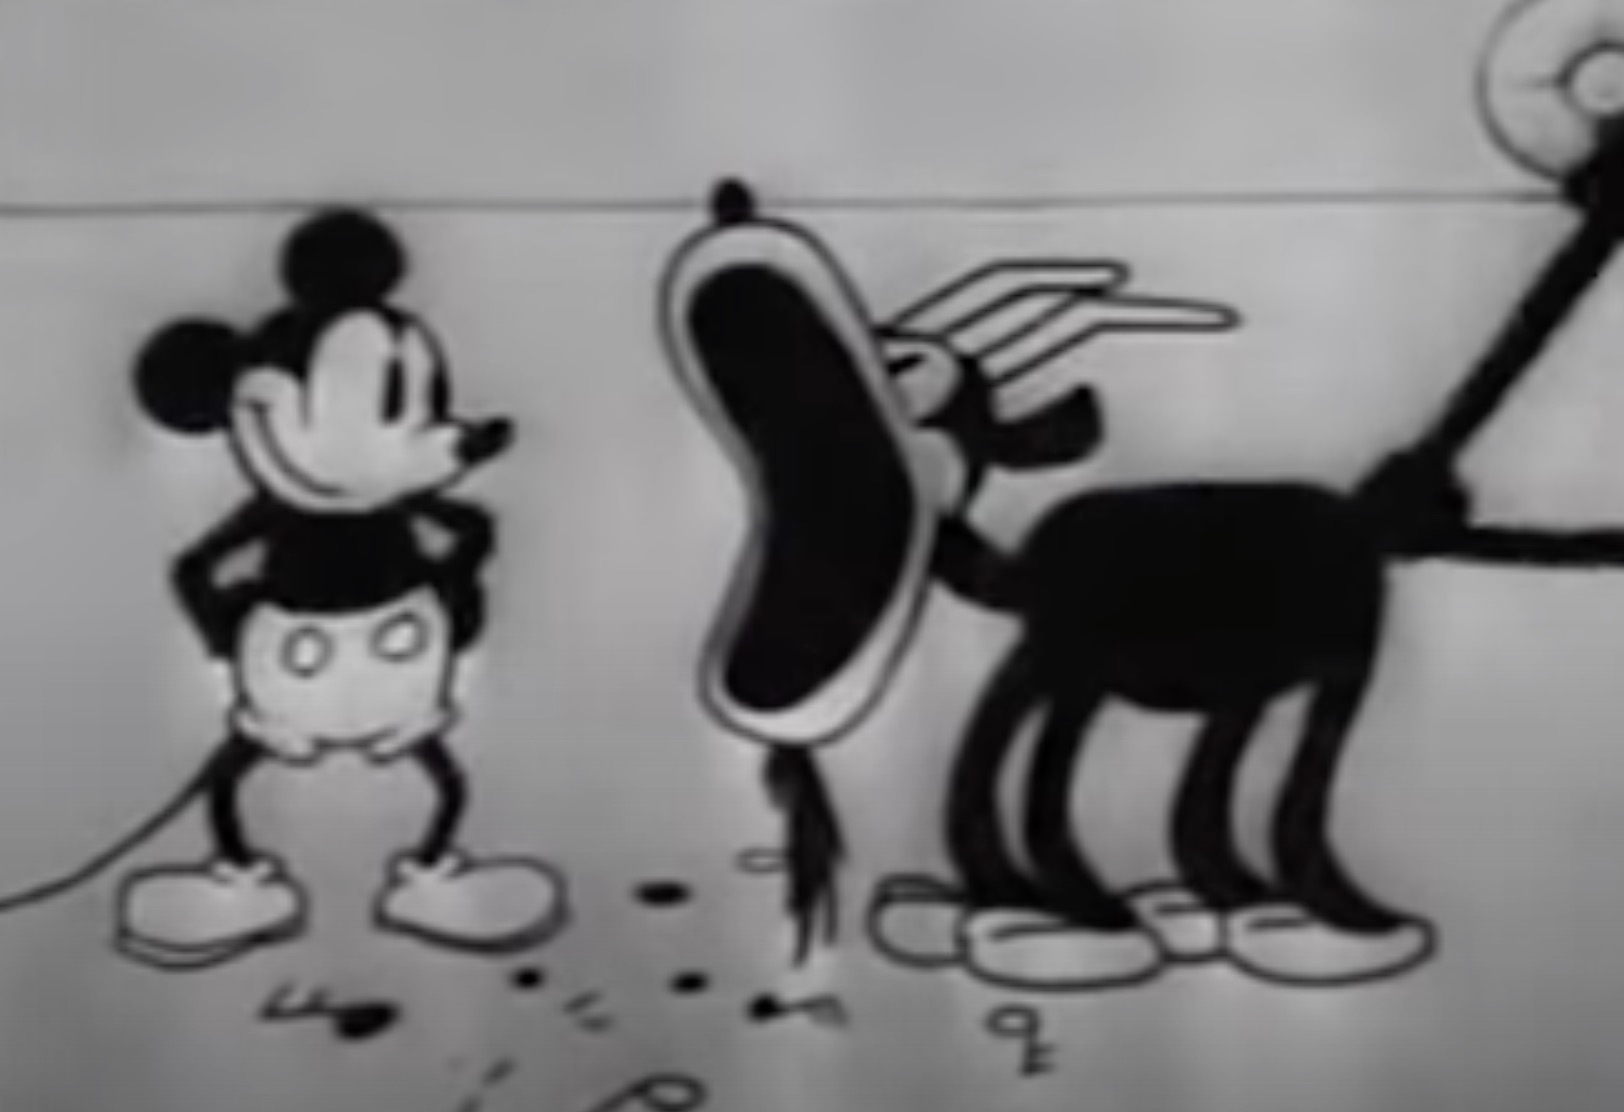 Mogen merken het personage van Mickey Mouse voortaan zomaar gebruiken in hun communicatie?